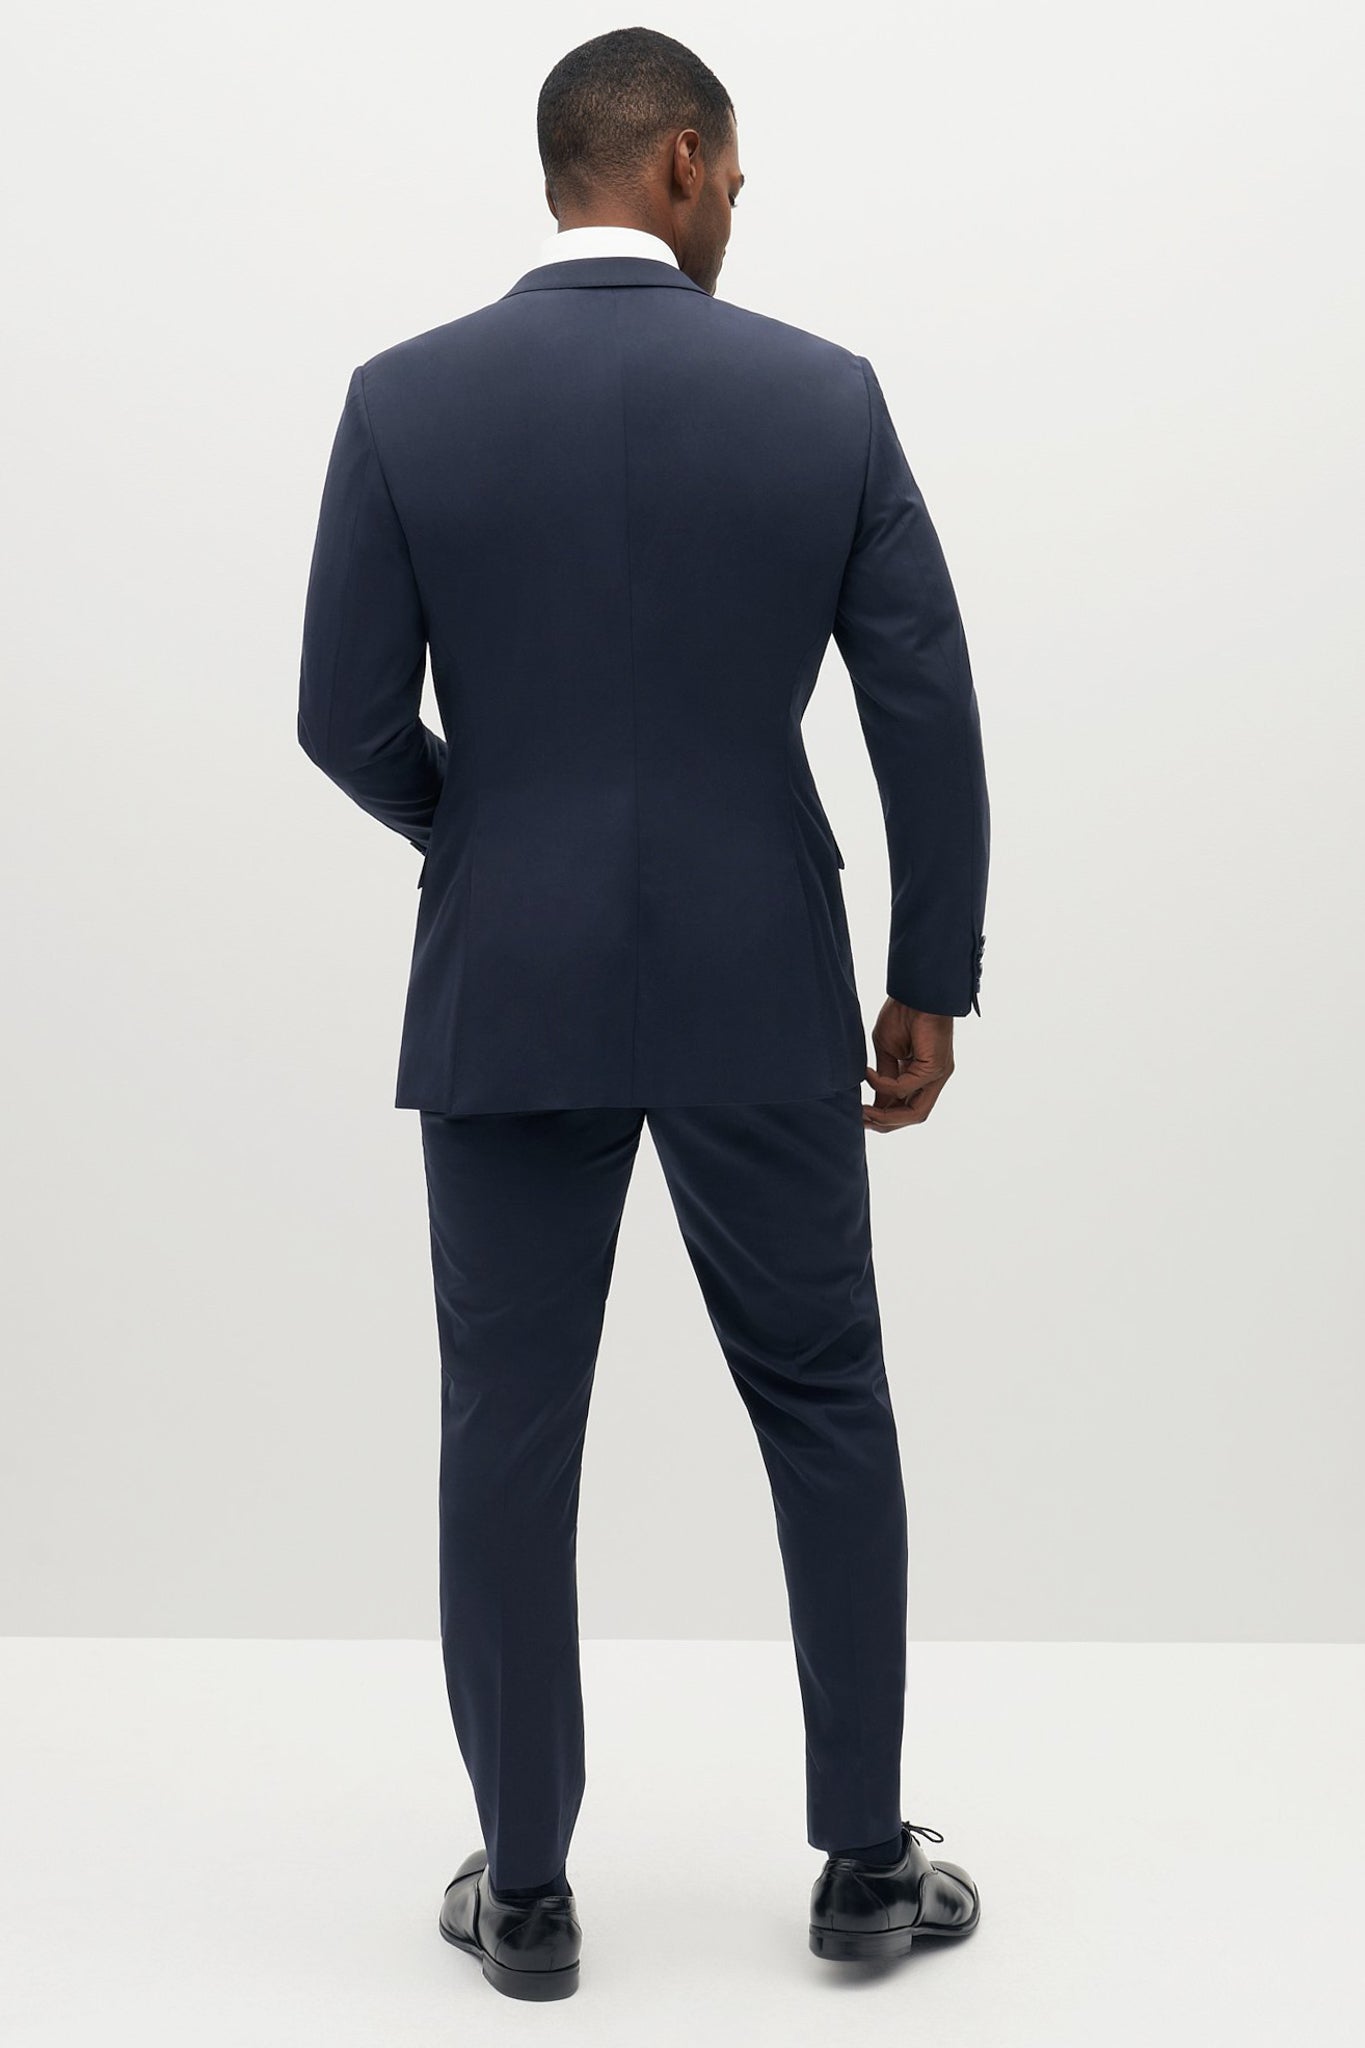 Navy Blue Suit Jacket by SuitShop